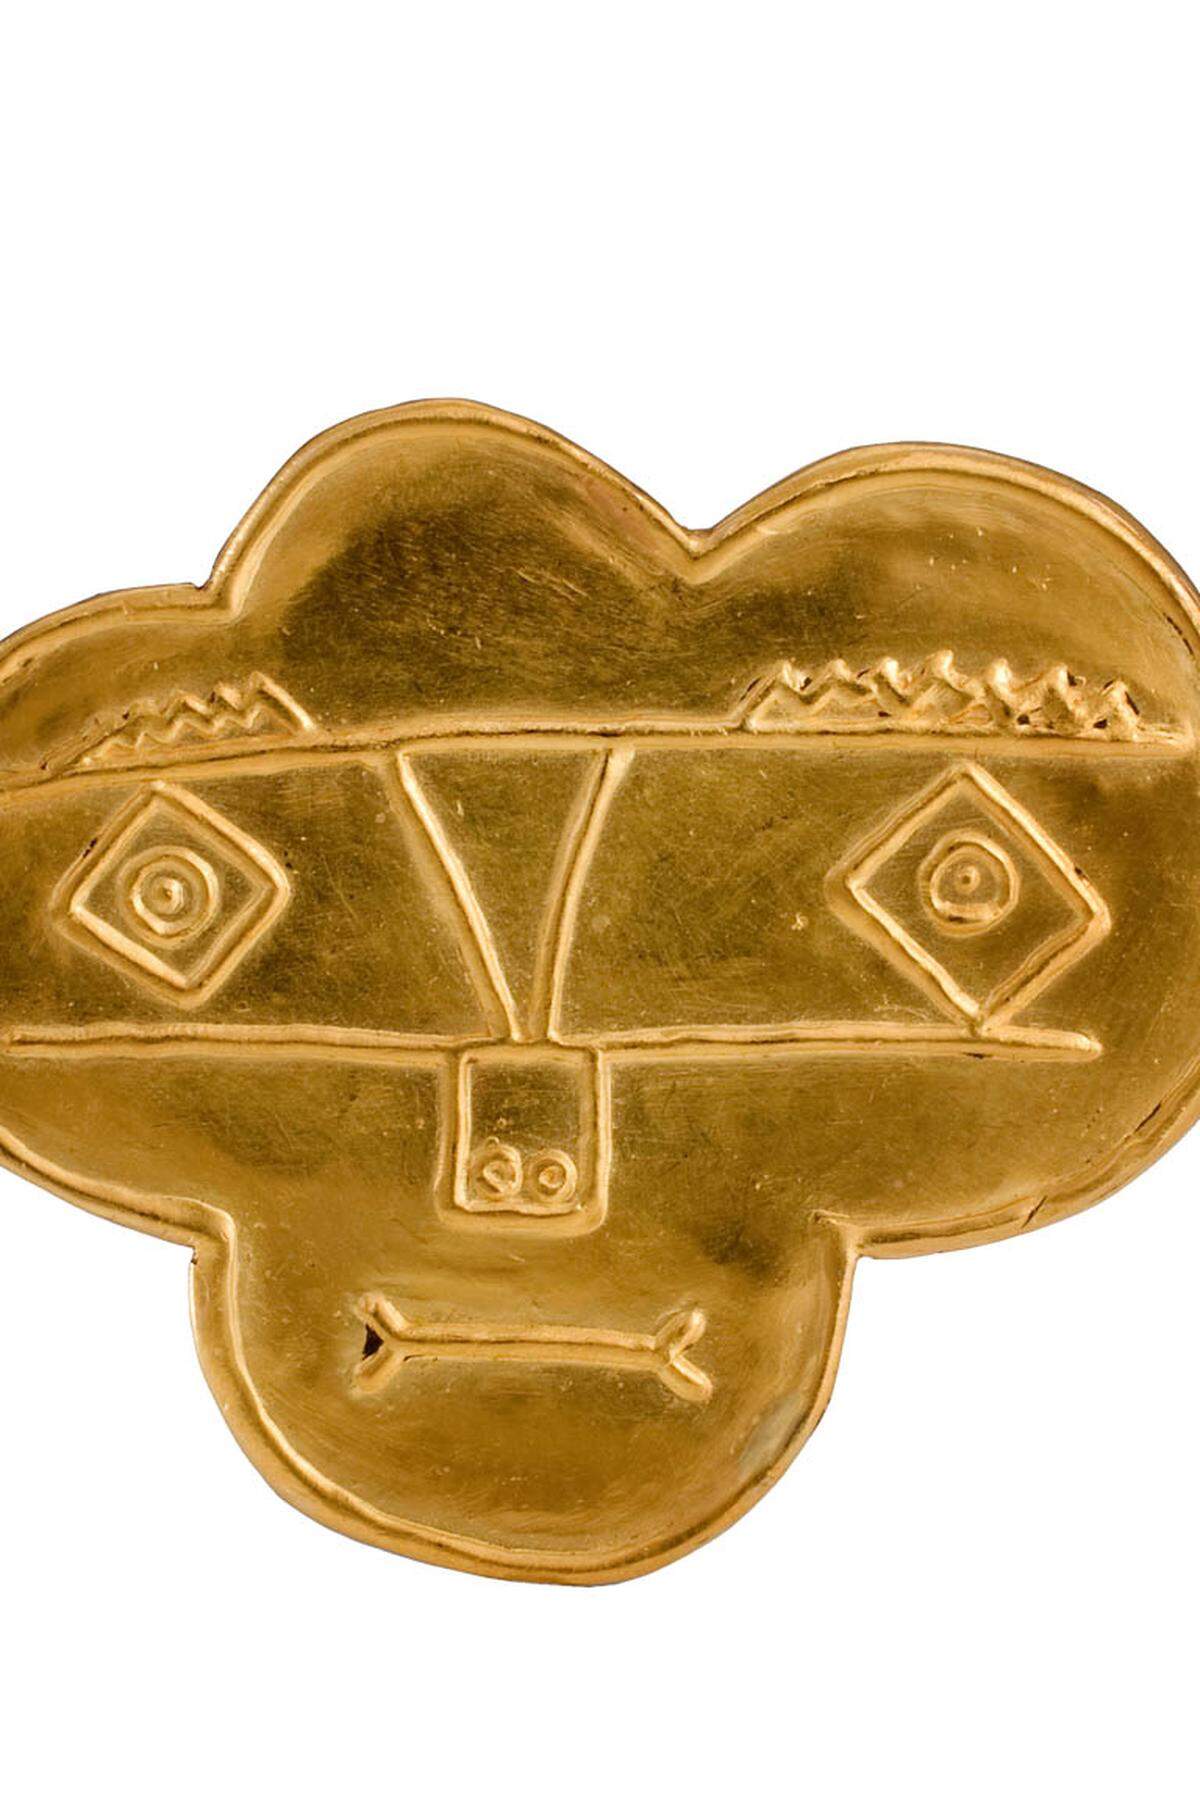 Diese goldene Brosche wurde von Pablo Picasso entworfen.